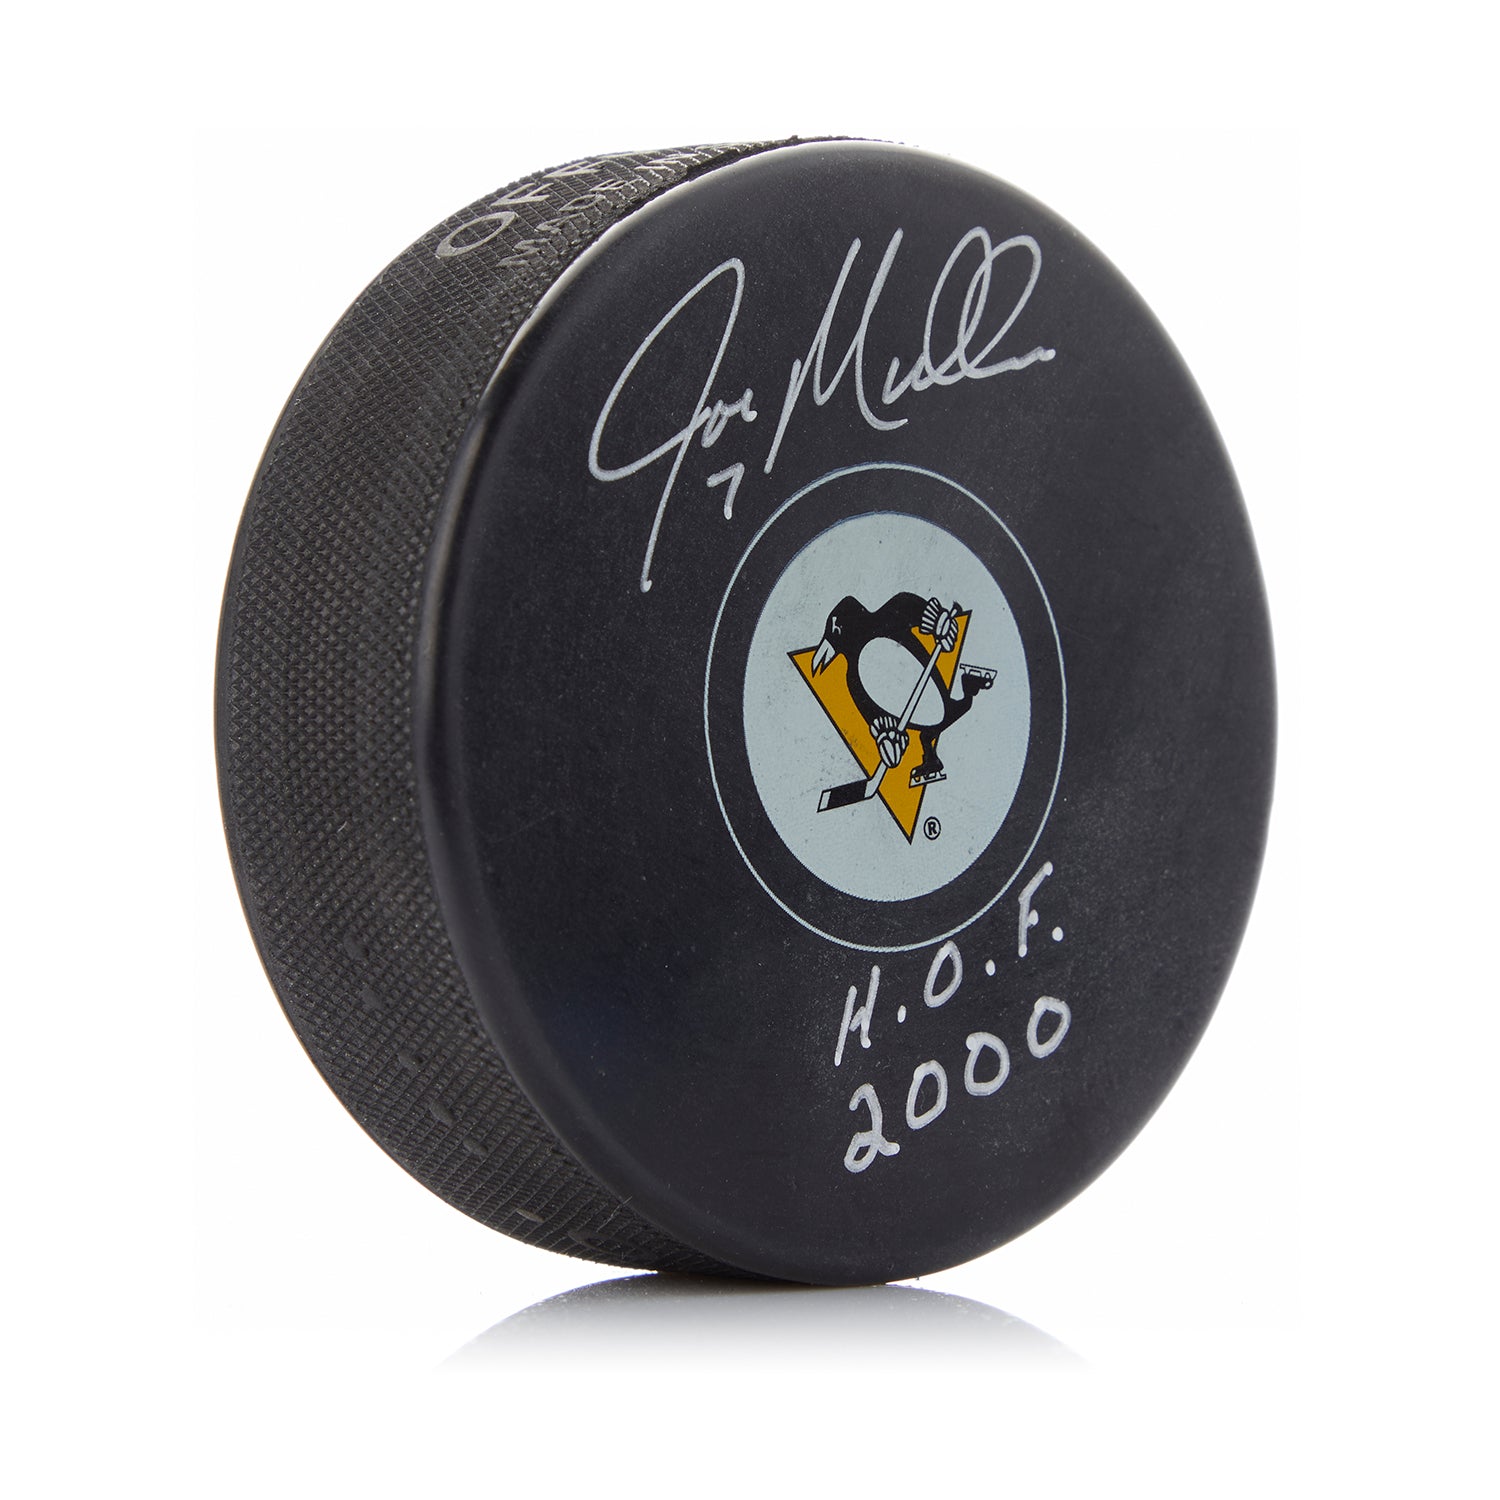 Joe Mullen Signed Pittsburgh Penguins Hockey Puck with HOF Note